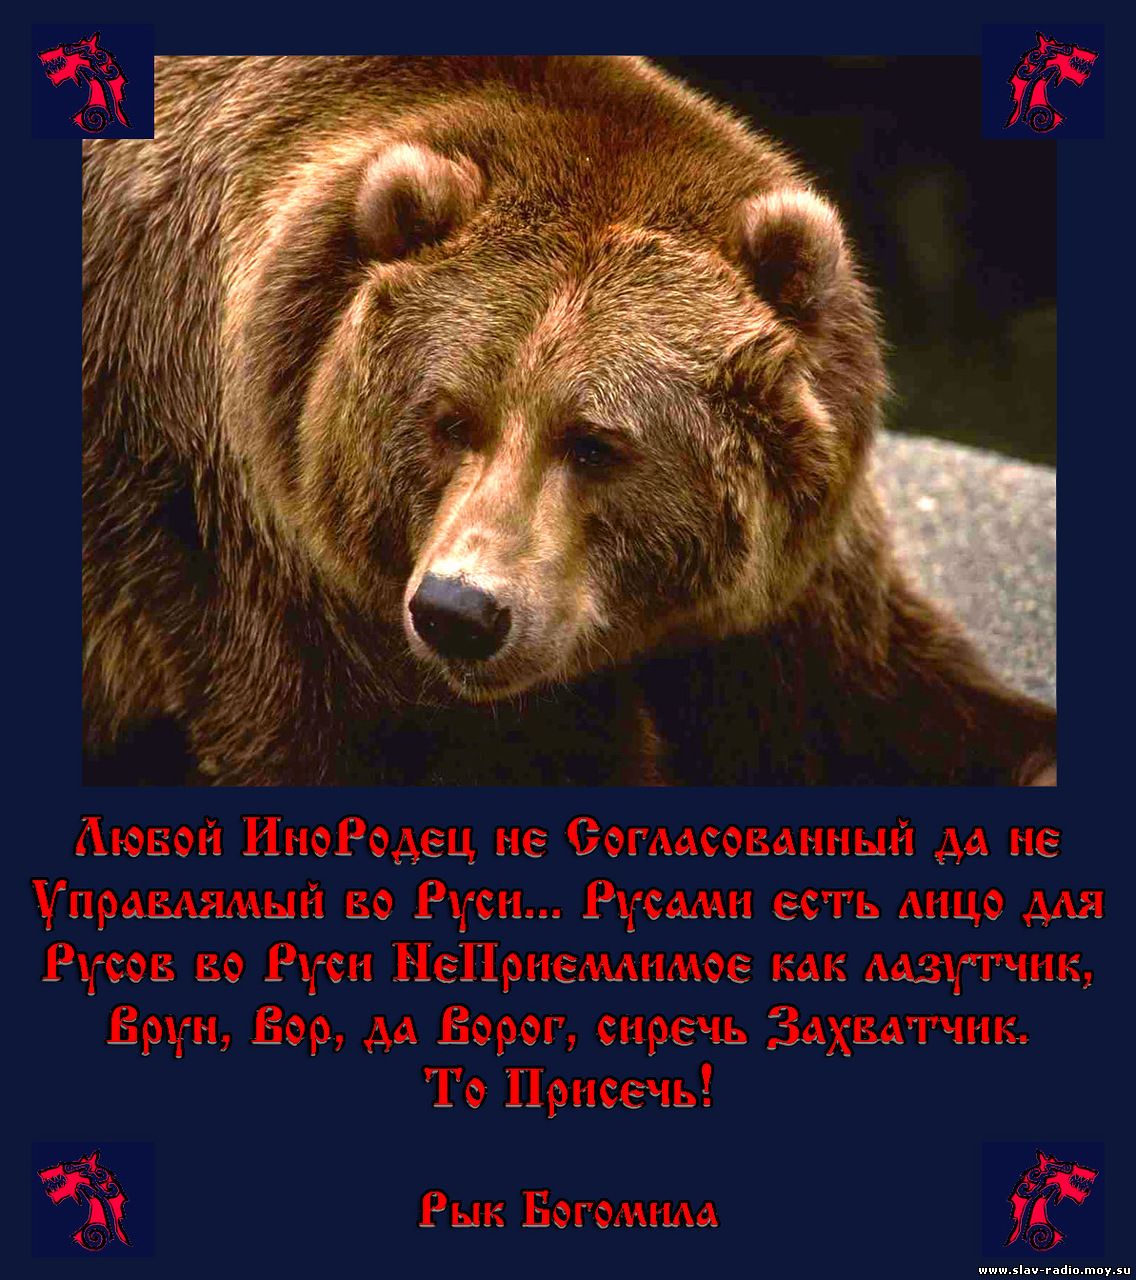 Неофициальный символ россии медведь. Медведь символ России. Бурый медведь символ России. Неофициальные символы России медведь. Медведь России для детей.